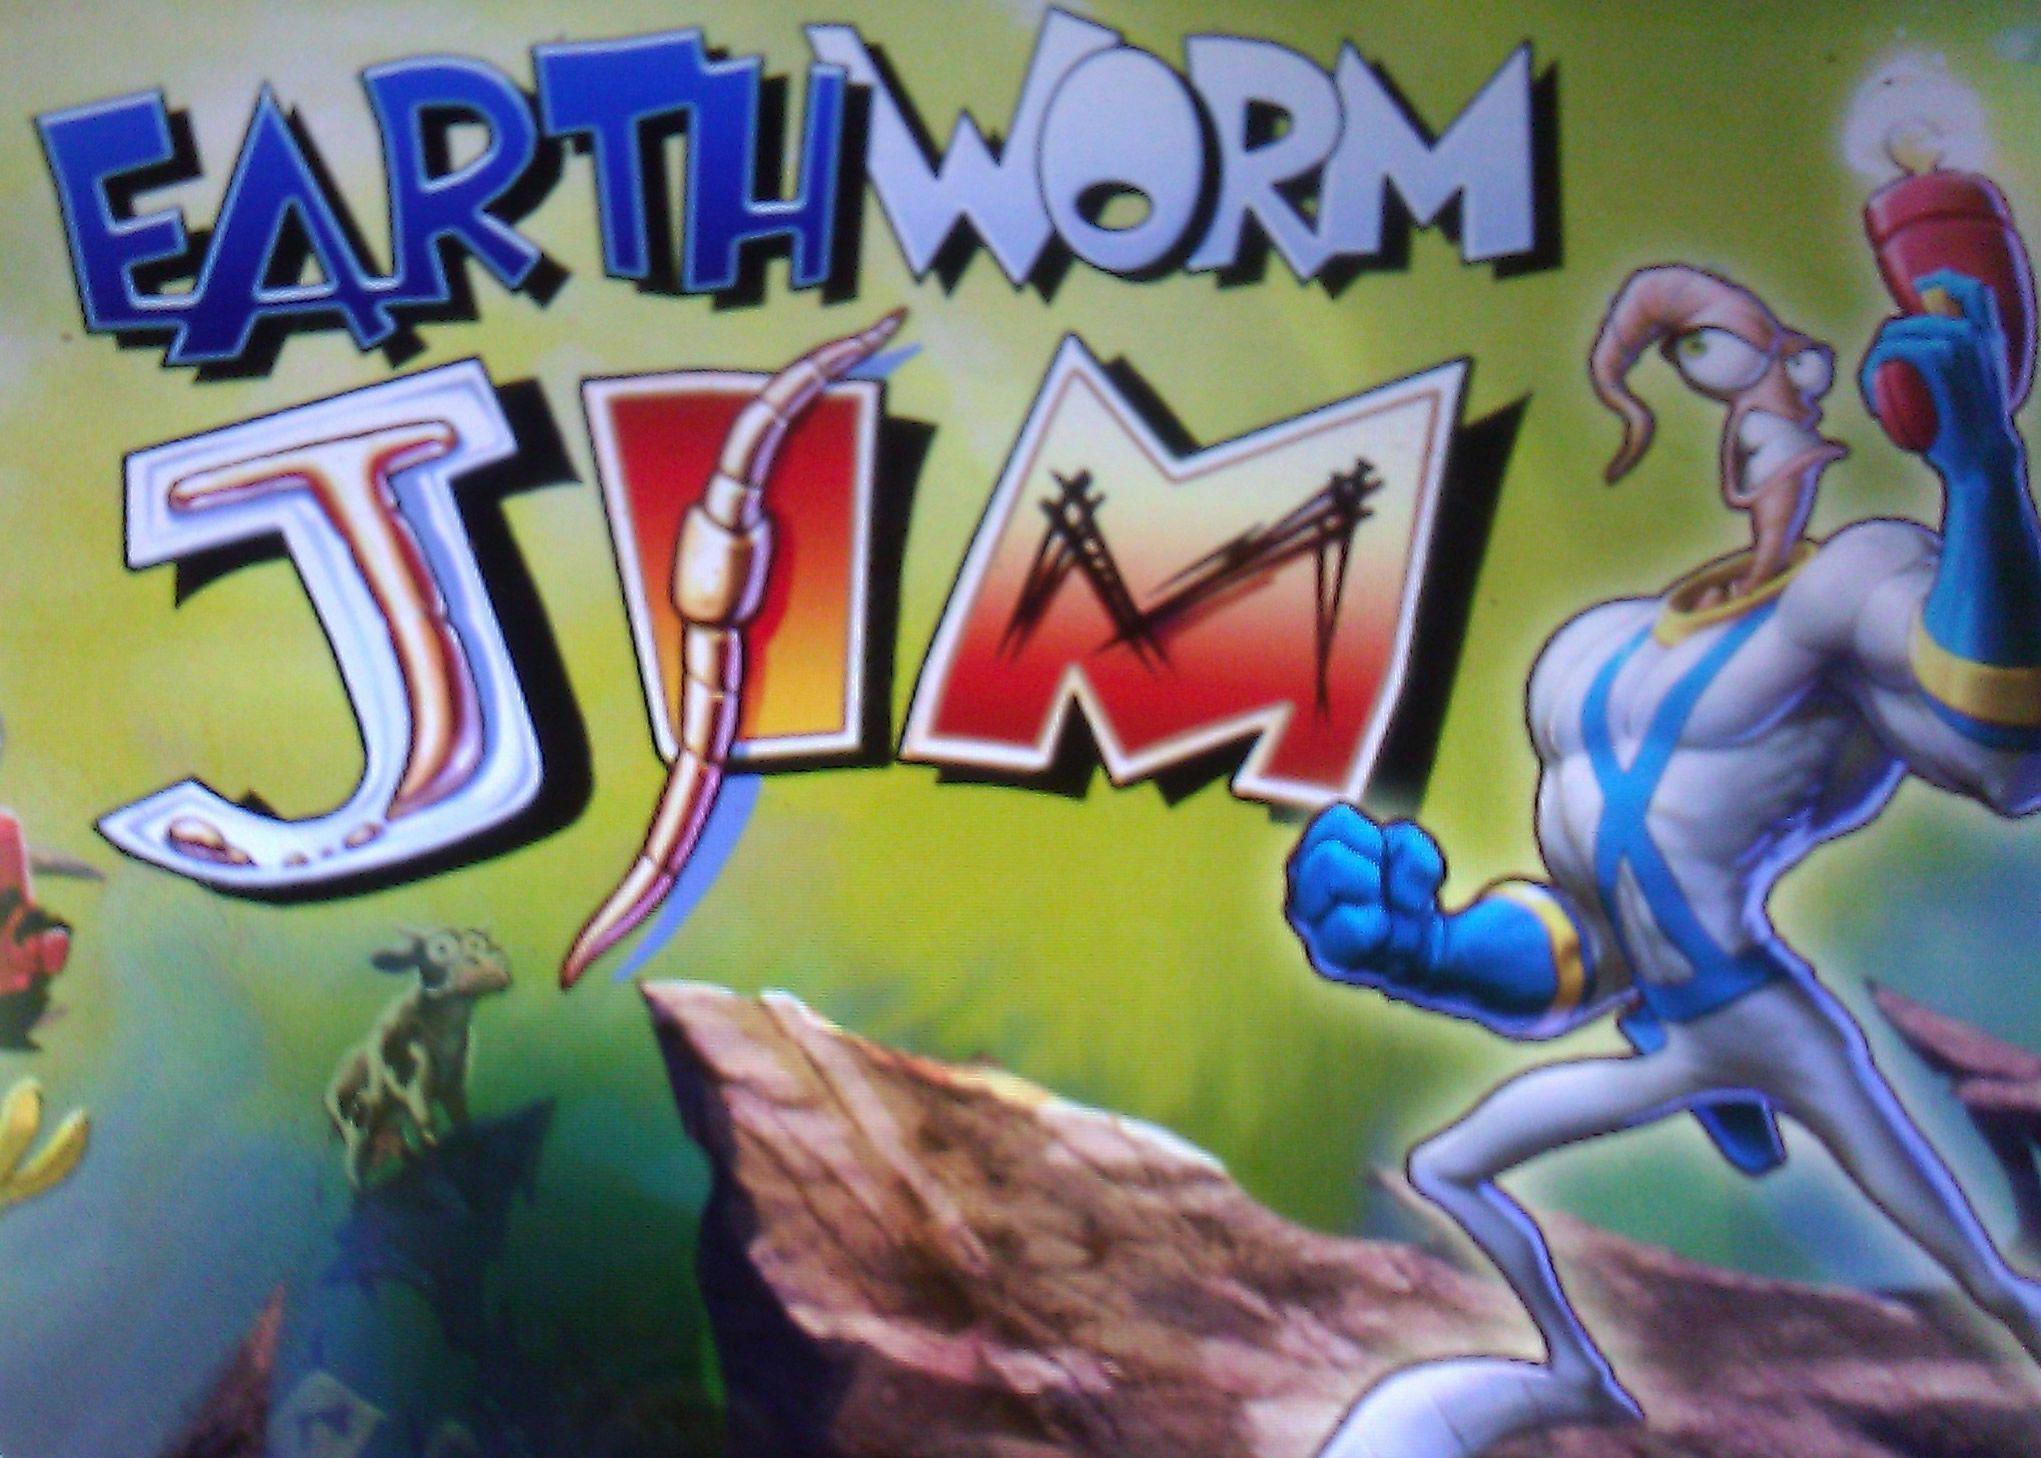 Earthworm Jim HD Green Gem Wallpaper. Green HD Wallpaper